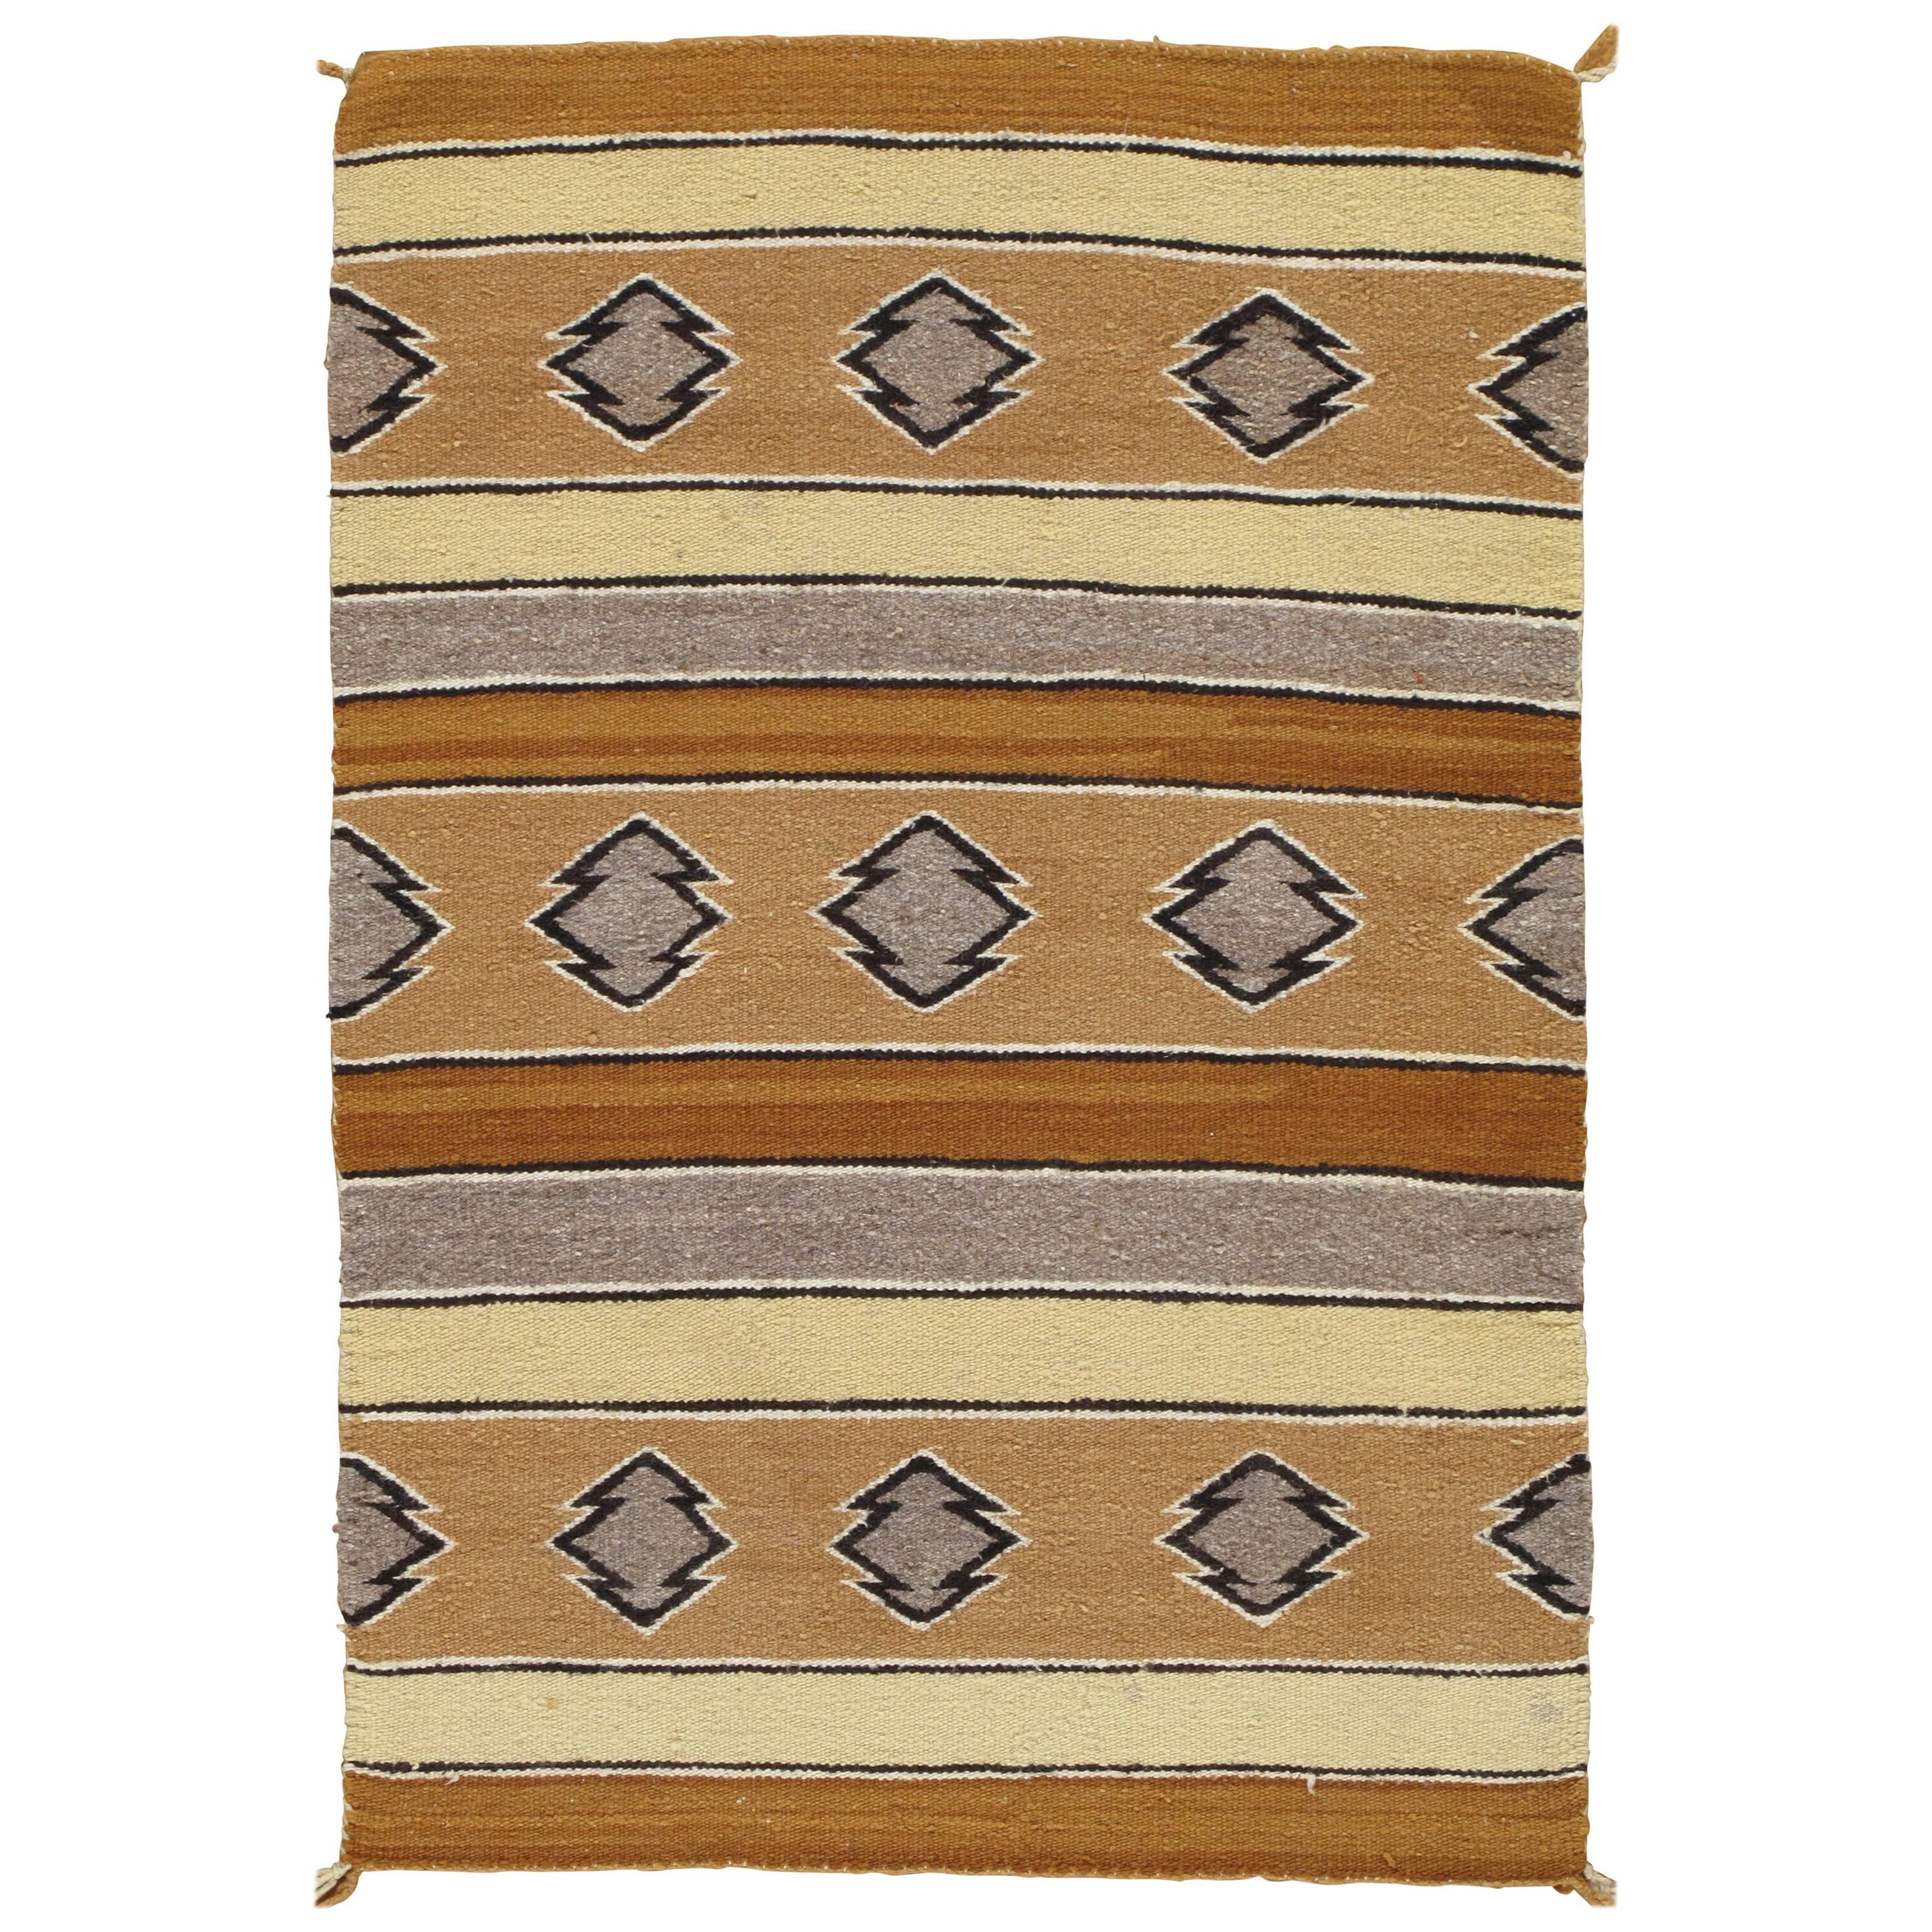 Navajo-Teppich, Volksteppich, handgefertigte Wolle, Beige, Karamell, Tan